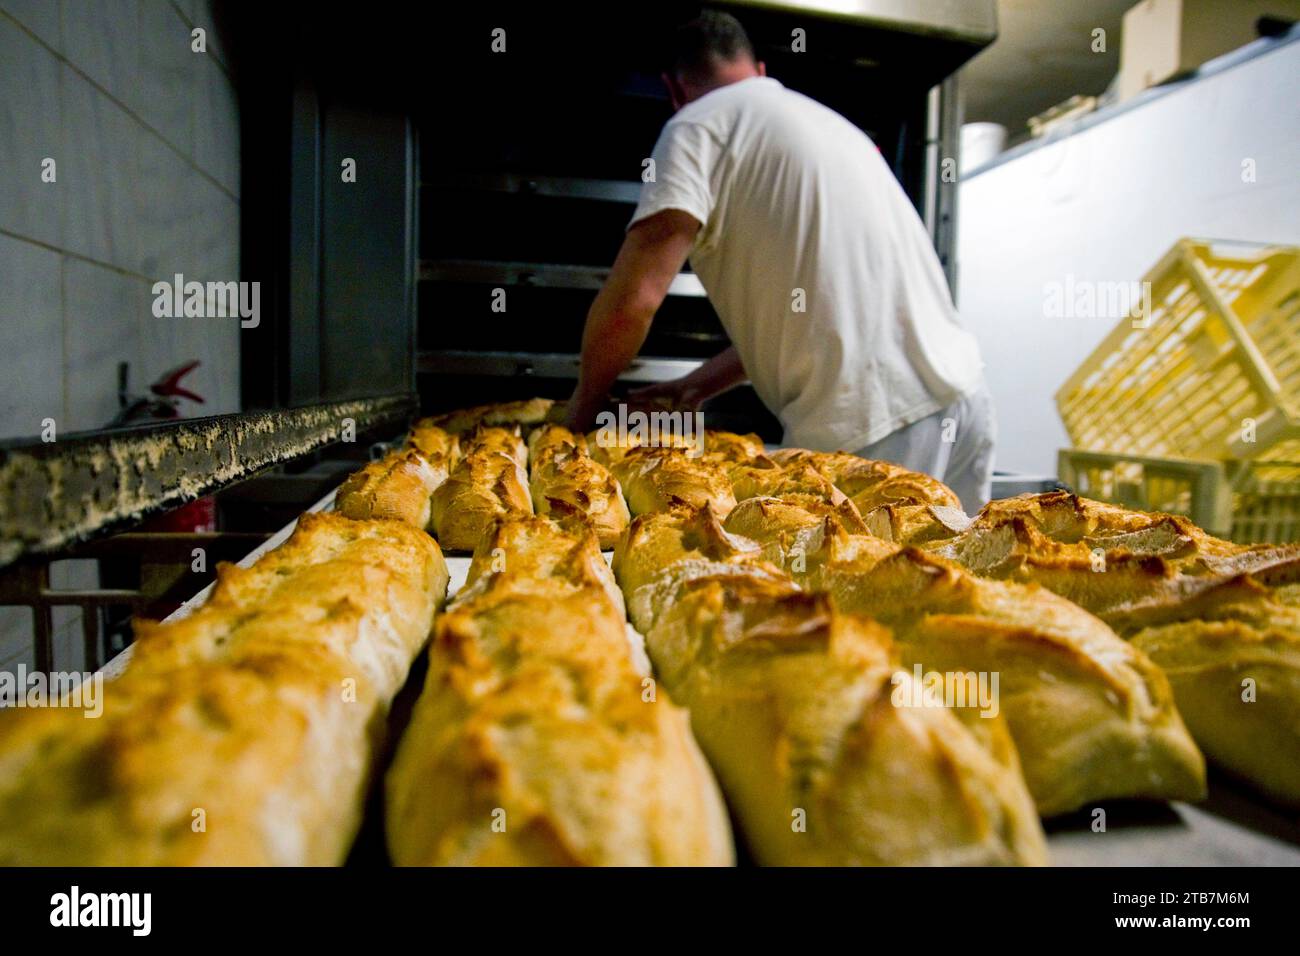 Boulangerie : fabrication du pain dans un four à pâtisserie. Illustration d'une boulangerie fonctionnant avec un four à pain à granulés impact de la hausse des prix de l'électricité. Frais Banque D'Images